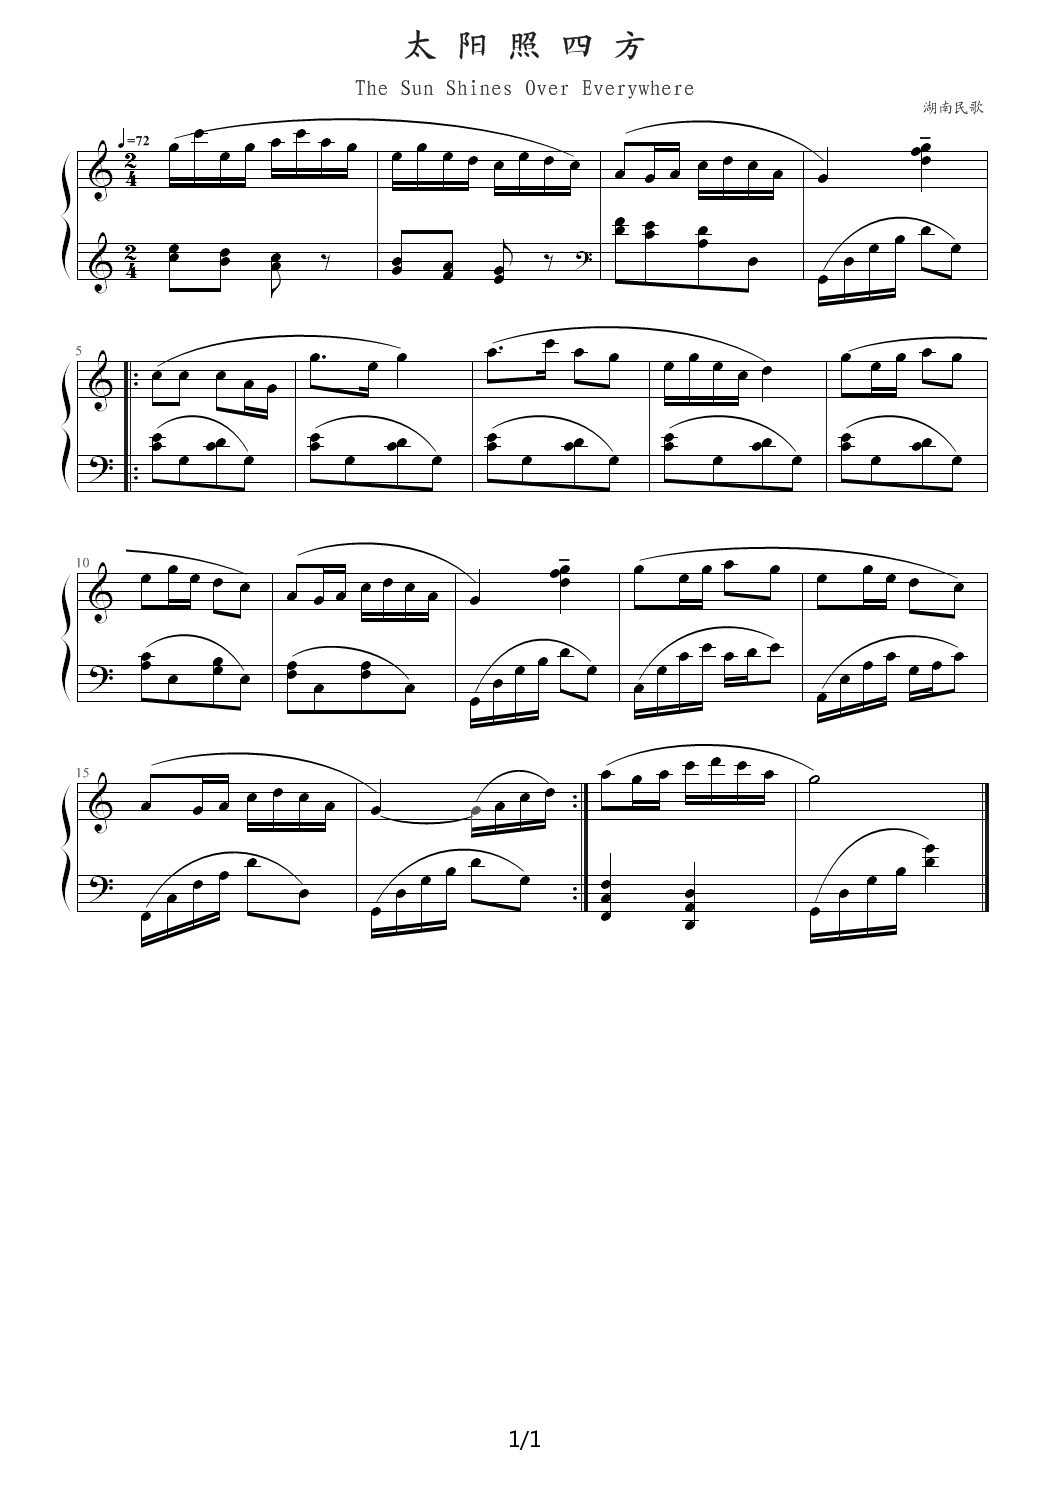 中国民歌儿童钢琴曲集102首 094 太阳照四方 c调